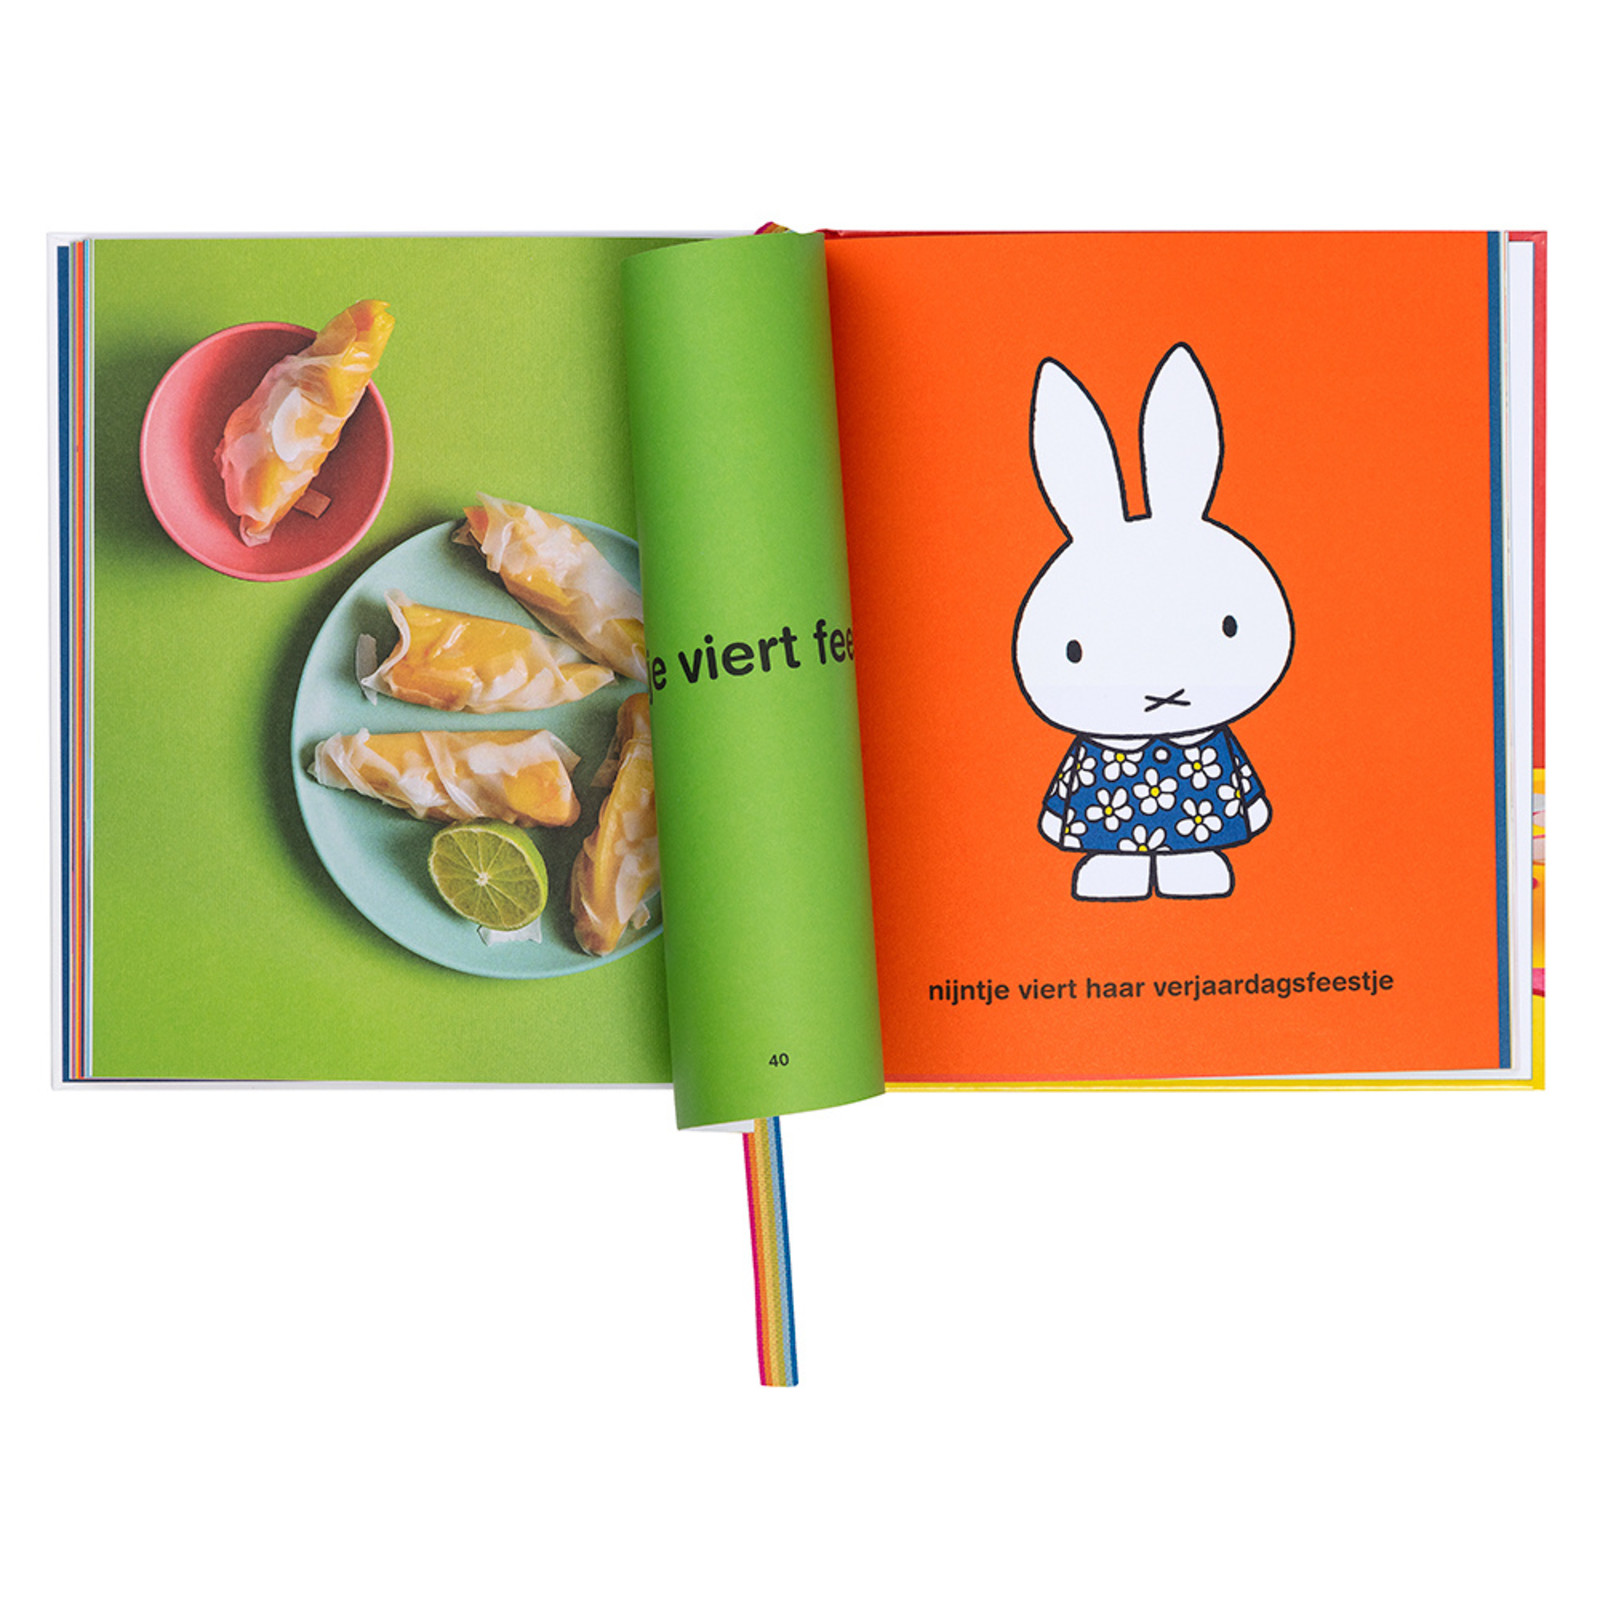 het feestelijke nijntje kookboek, trakteren met nijntje (a festive miffy cookbook, birthday treats with miffy)